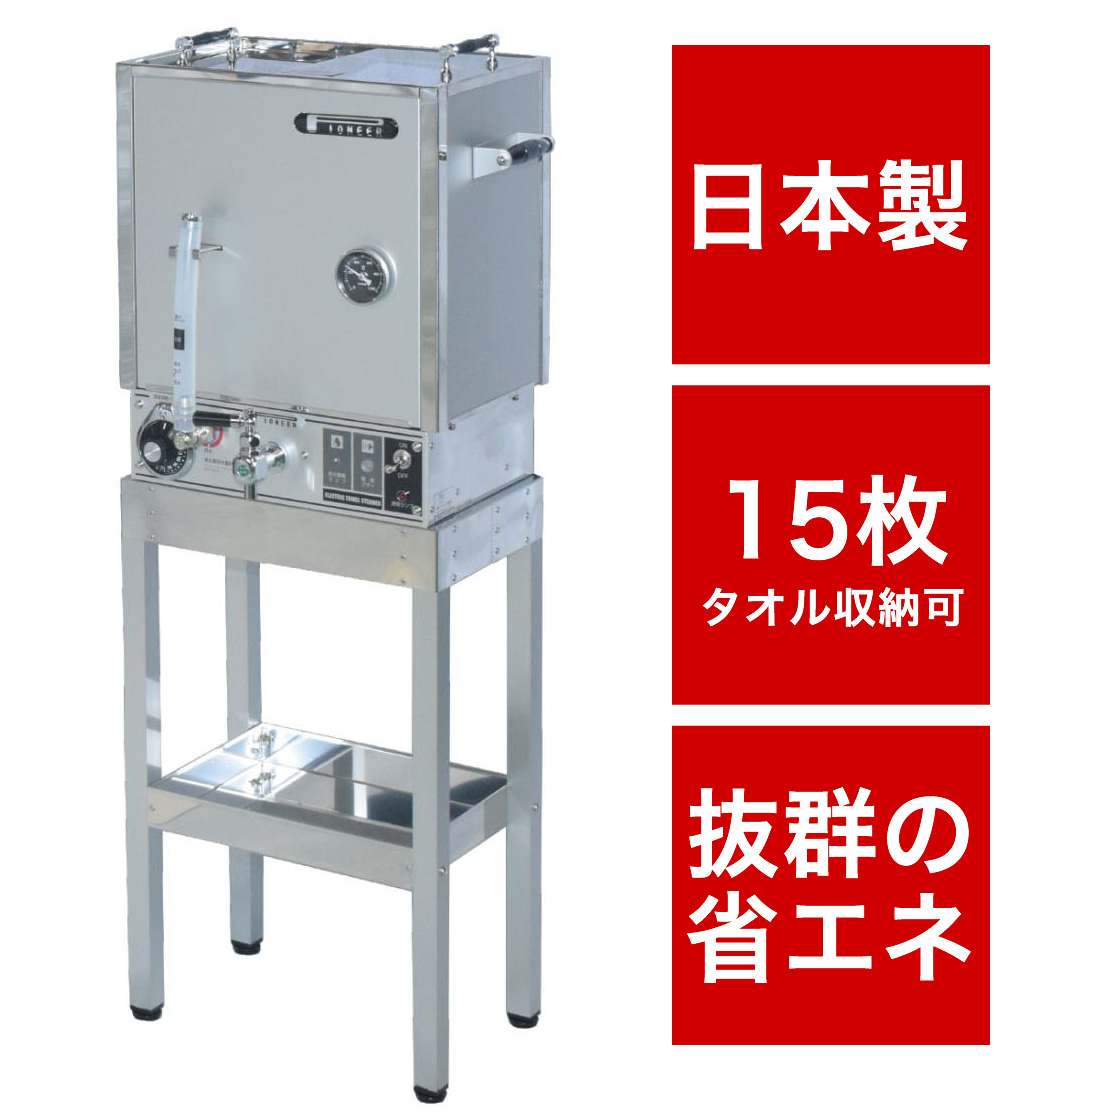 タオル蒸し器 理容 床屋 バーバー 日本製 電気式 パイオニア YS-100N